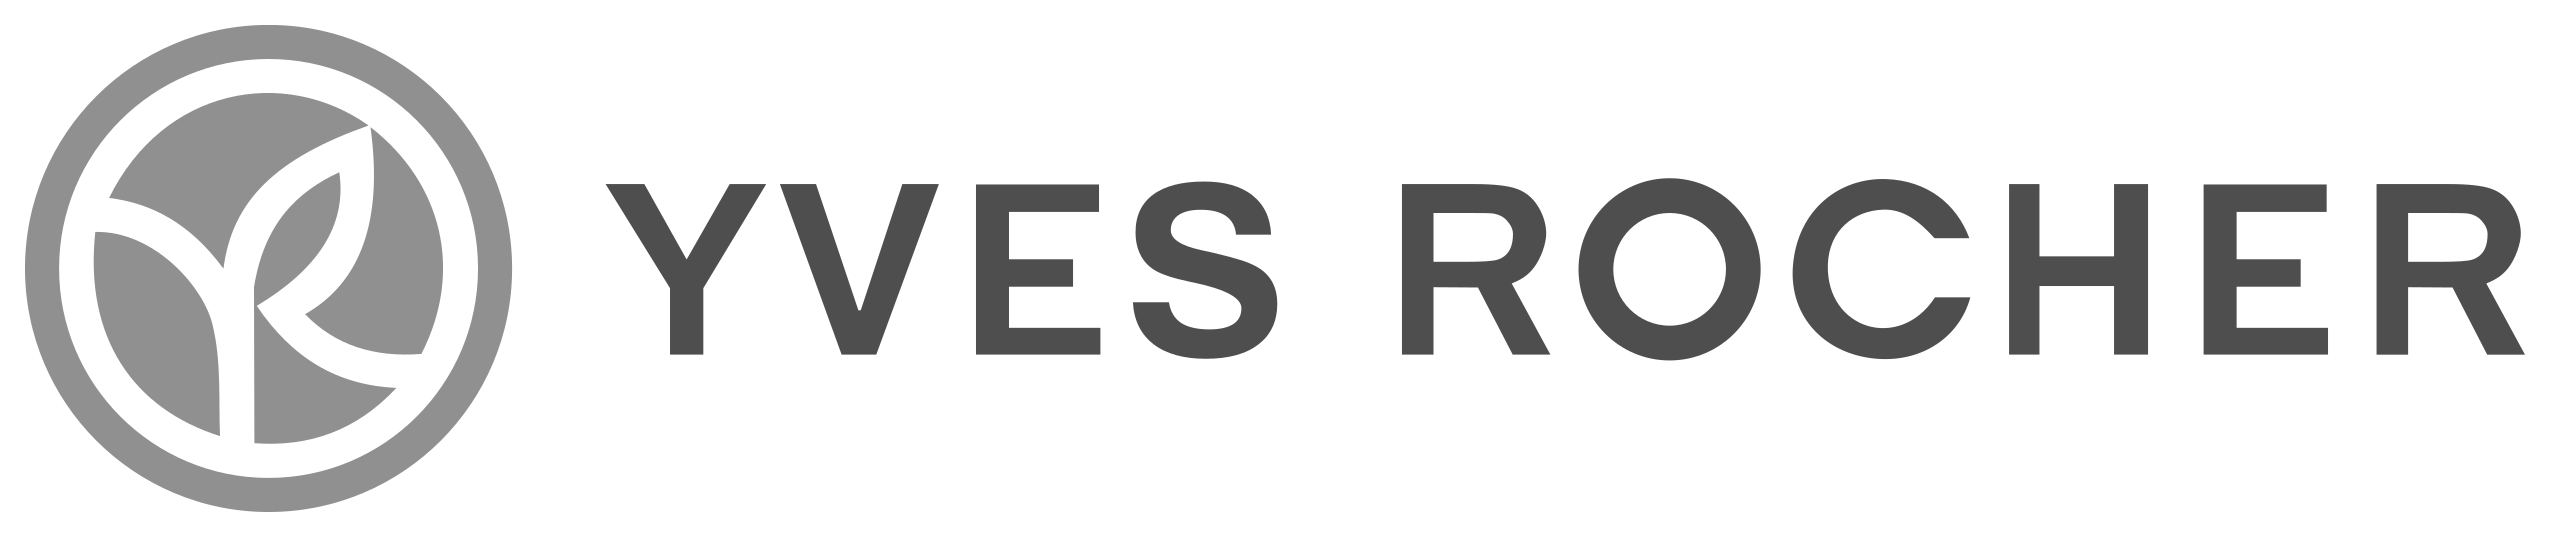 Yves_Rocher_logo